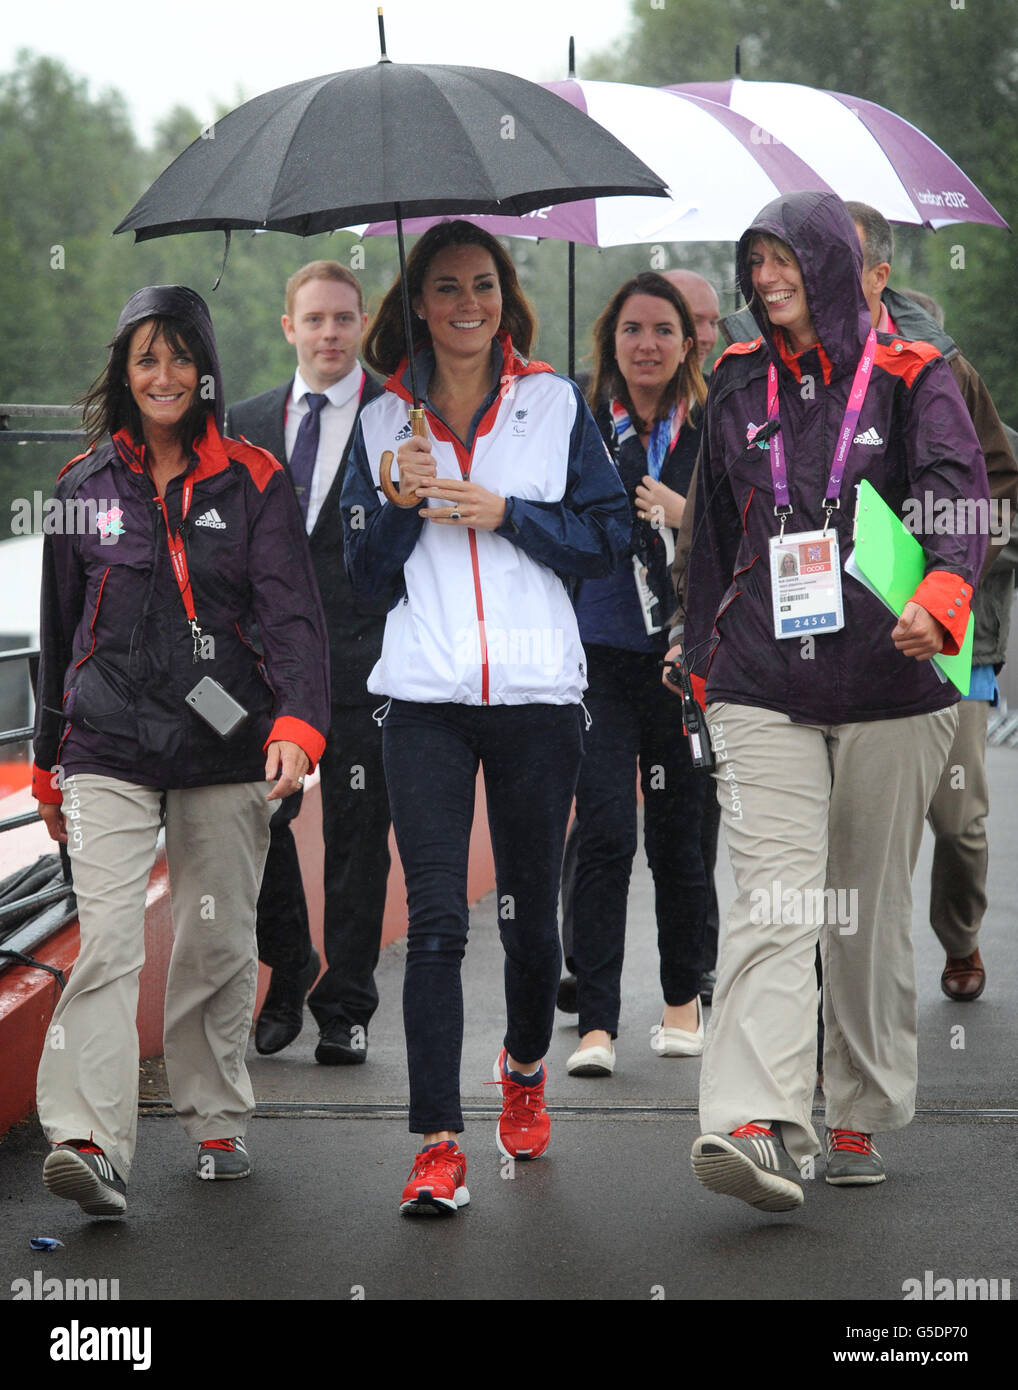 La duchesse de Cambridge arrive pour assister à la finale de l'aviron à Eton Dorney dans le Berkshire pendant les Jeux paralympiques. Banque D'Images